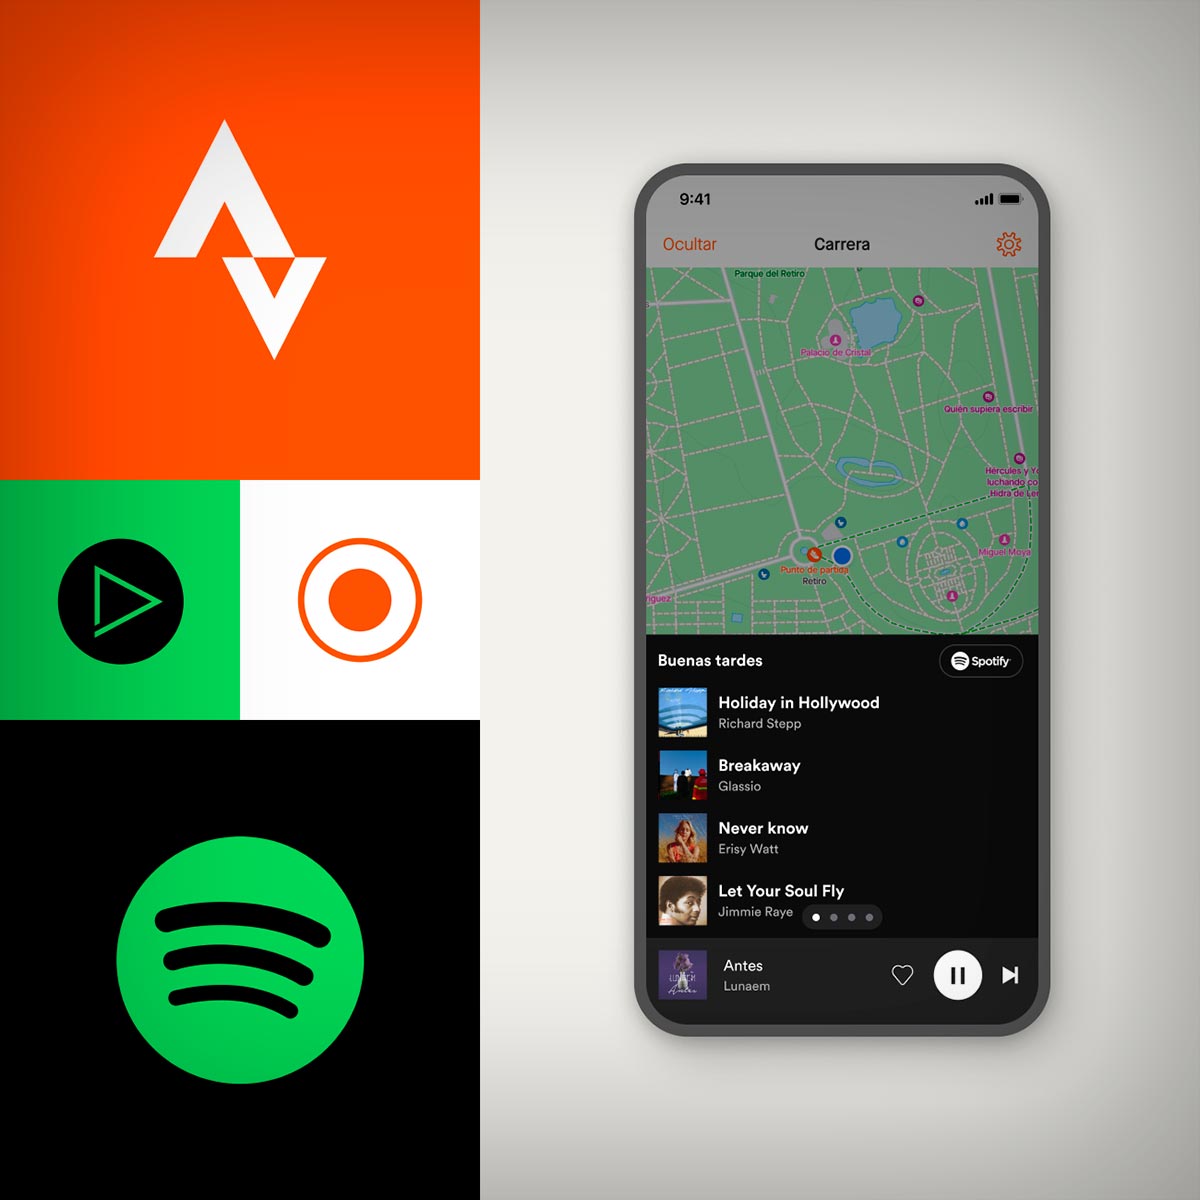 Strava anuncia su integración con Spotify para permitir acceder fácilmente a música, podcasts y audiolibros desde la app